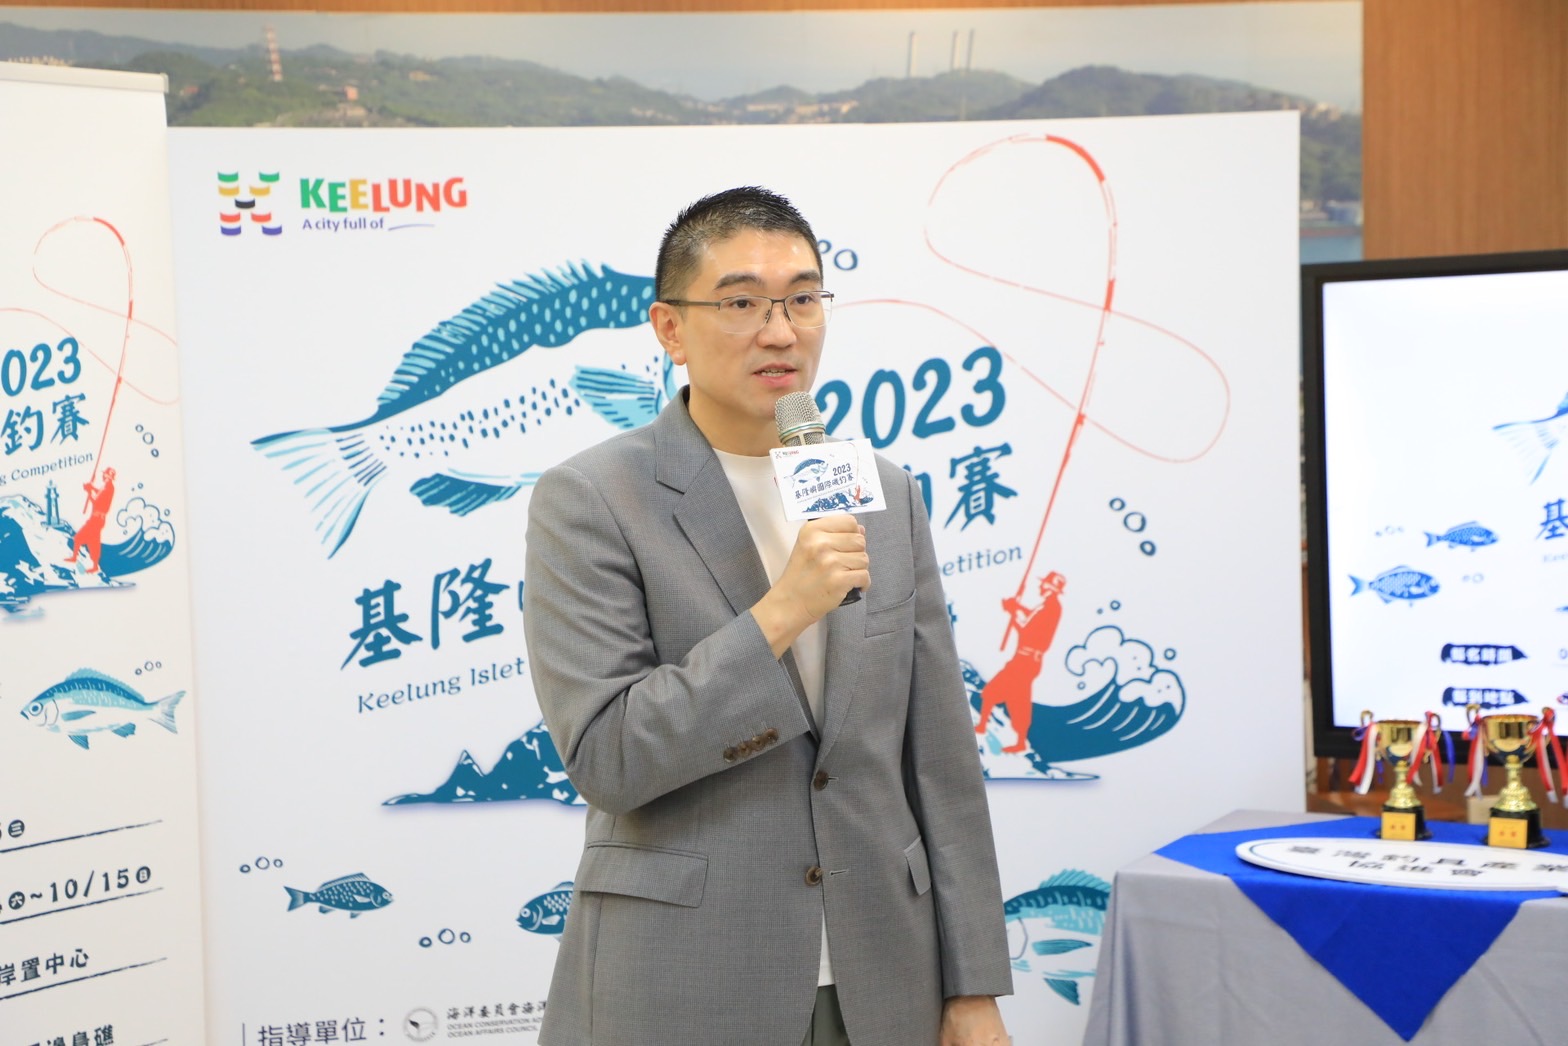 市長謝國樑為「2023基隆嶼國際磯釣賽」進行宣傳